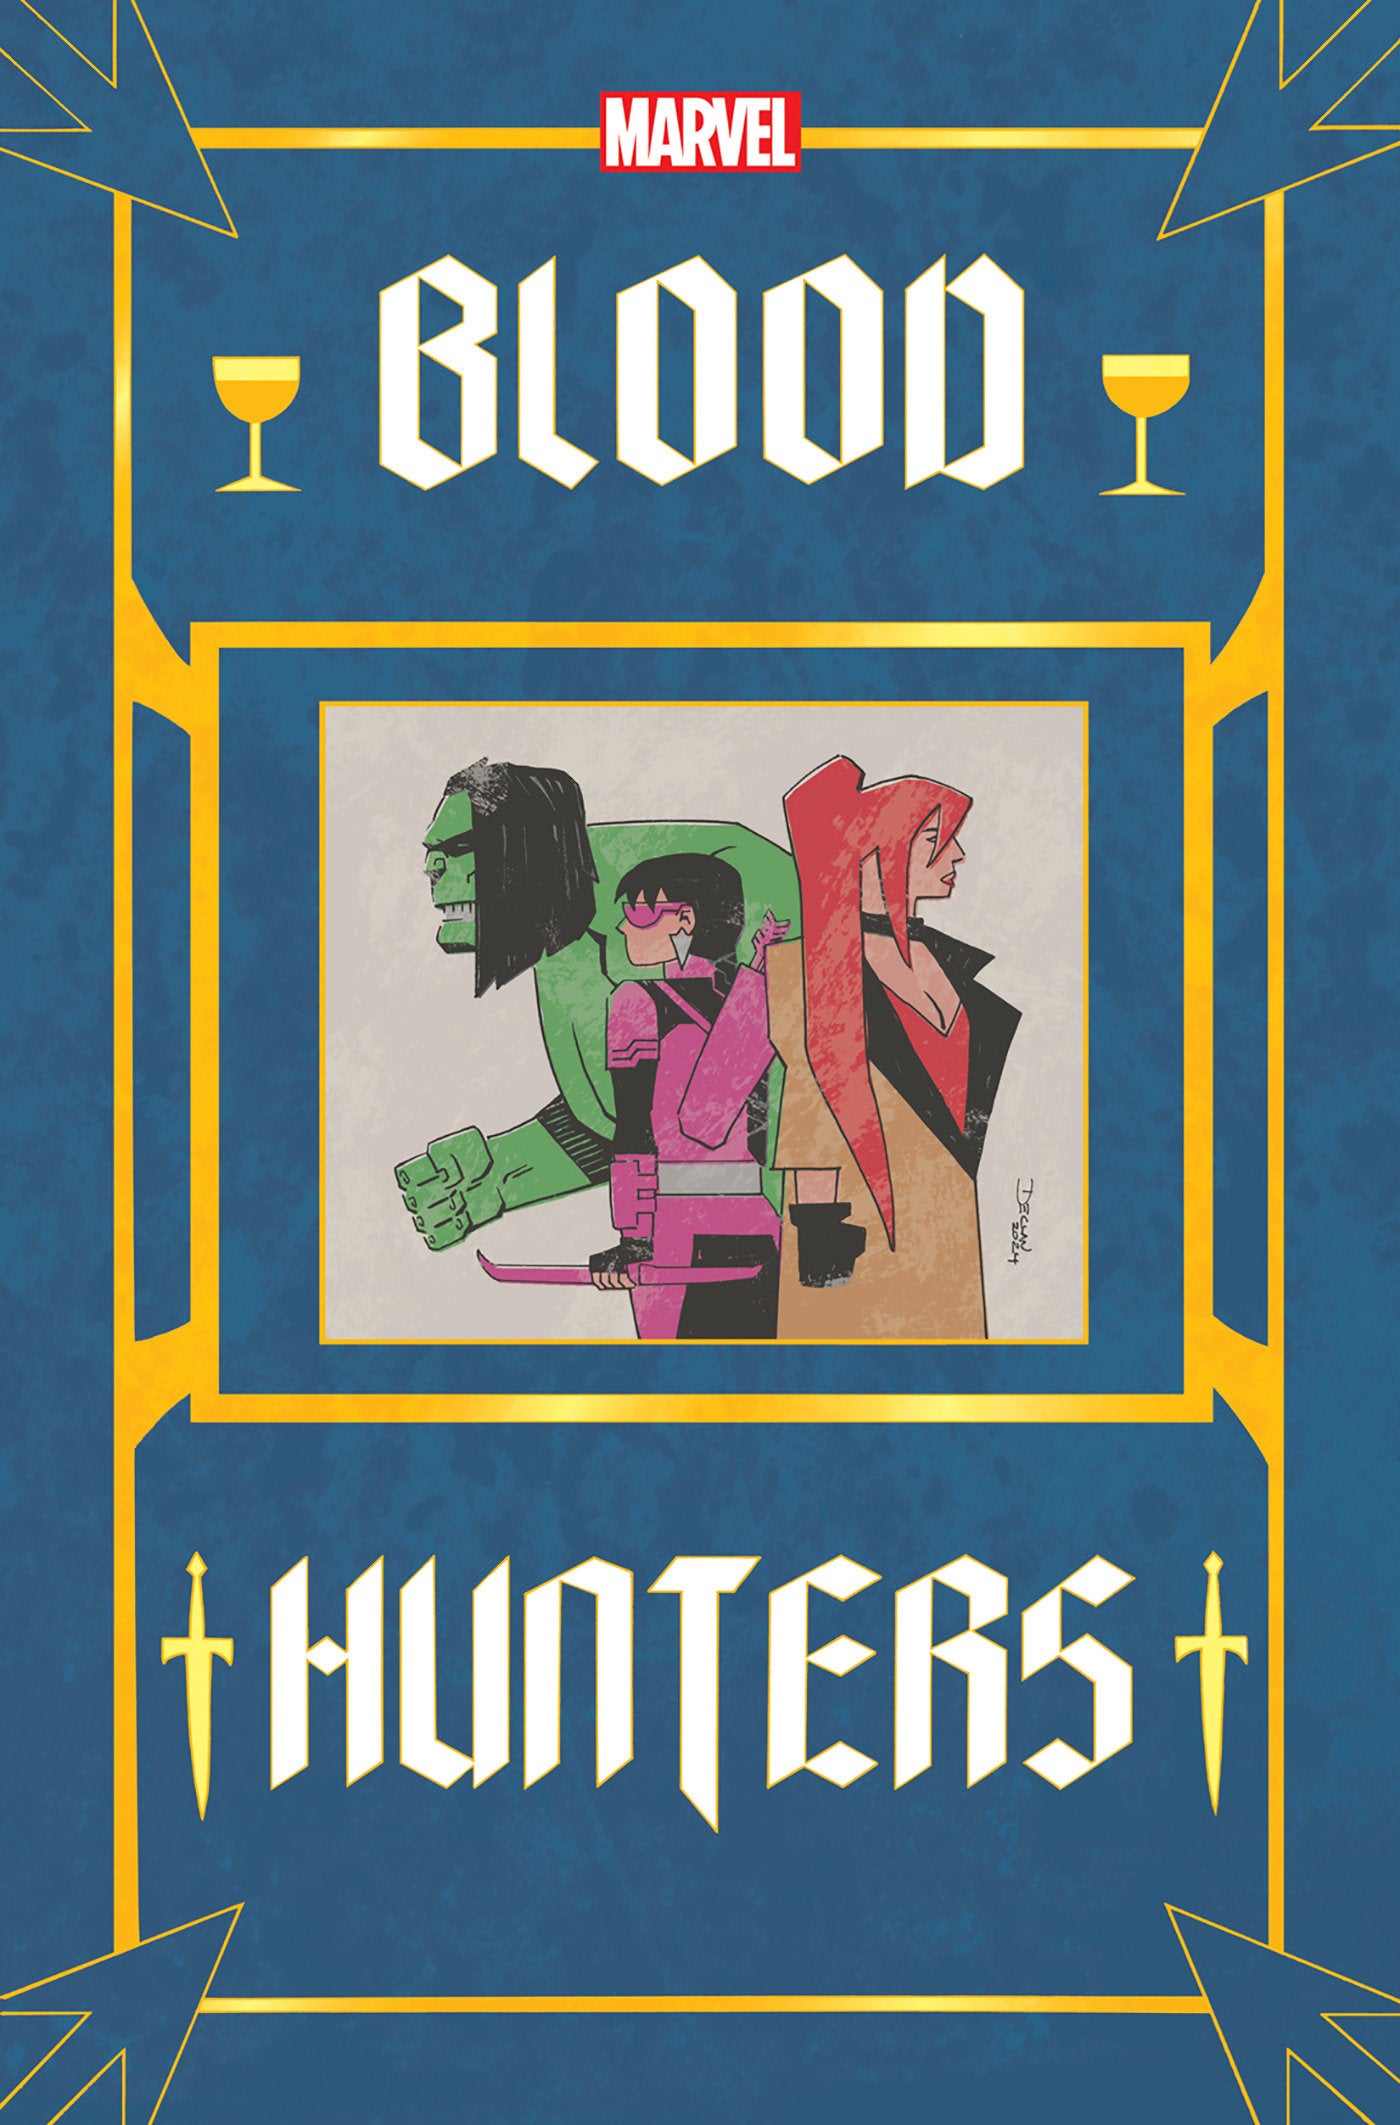  BLOOD HUNTERS #2 (2024)- CVR (MAIN) Greg Land, CVR DECLAN SHALVEY BOOK COVER VAR [BH]- MARVEL- Coinz Comics 